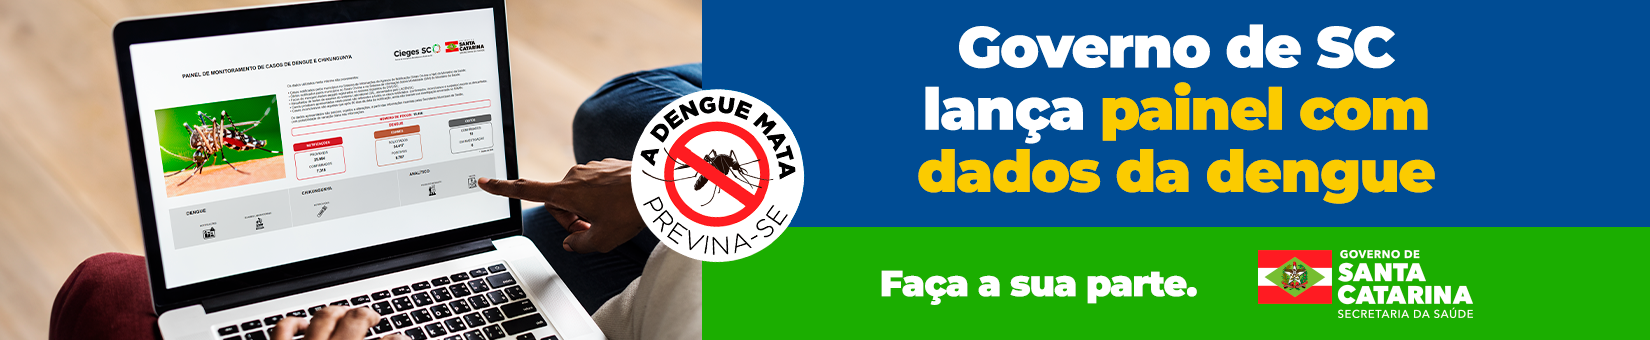 Governo-de-SC-lana-painel-com-dados-da-dengue-BANNER